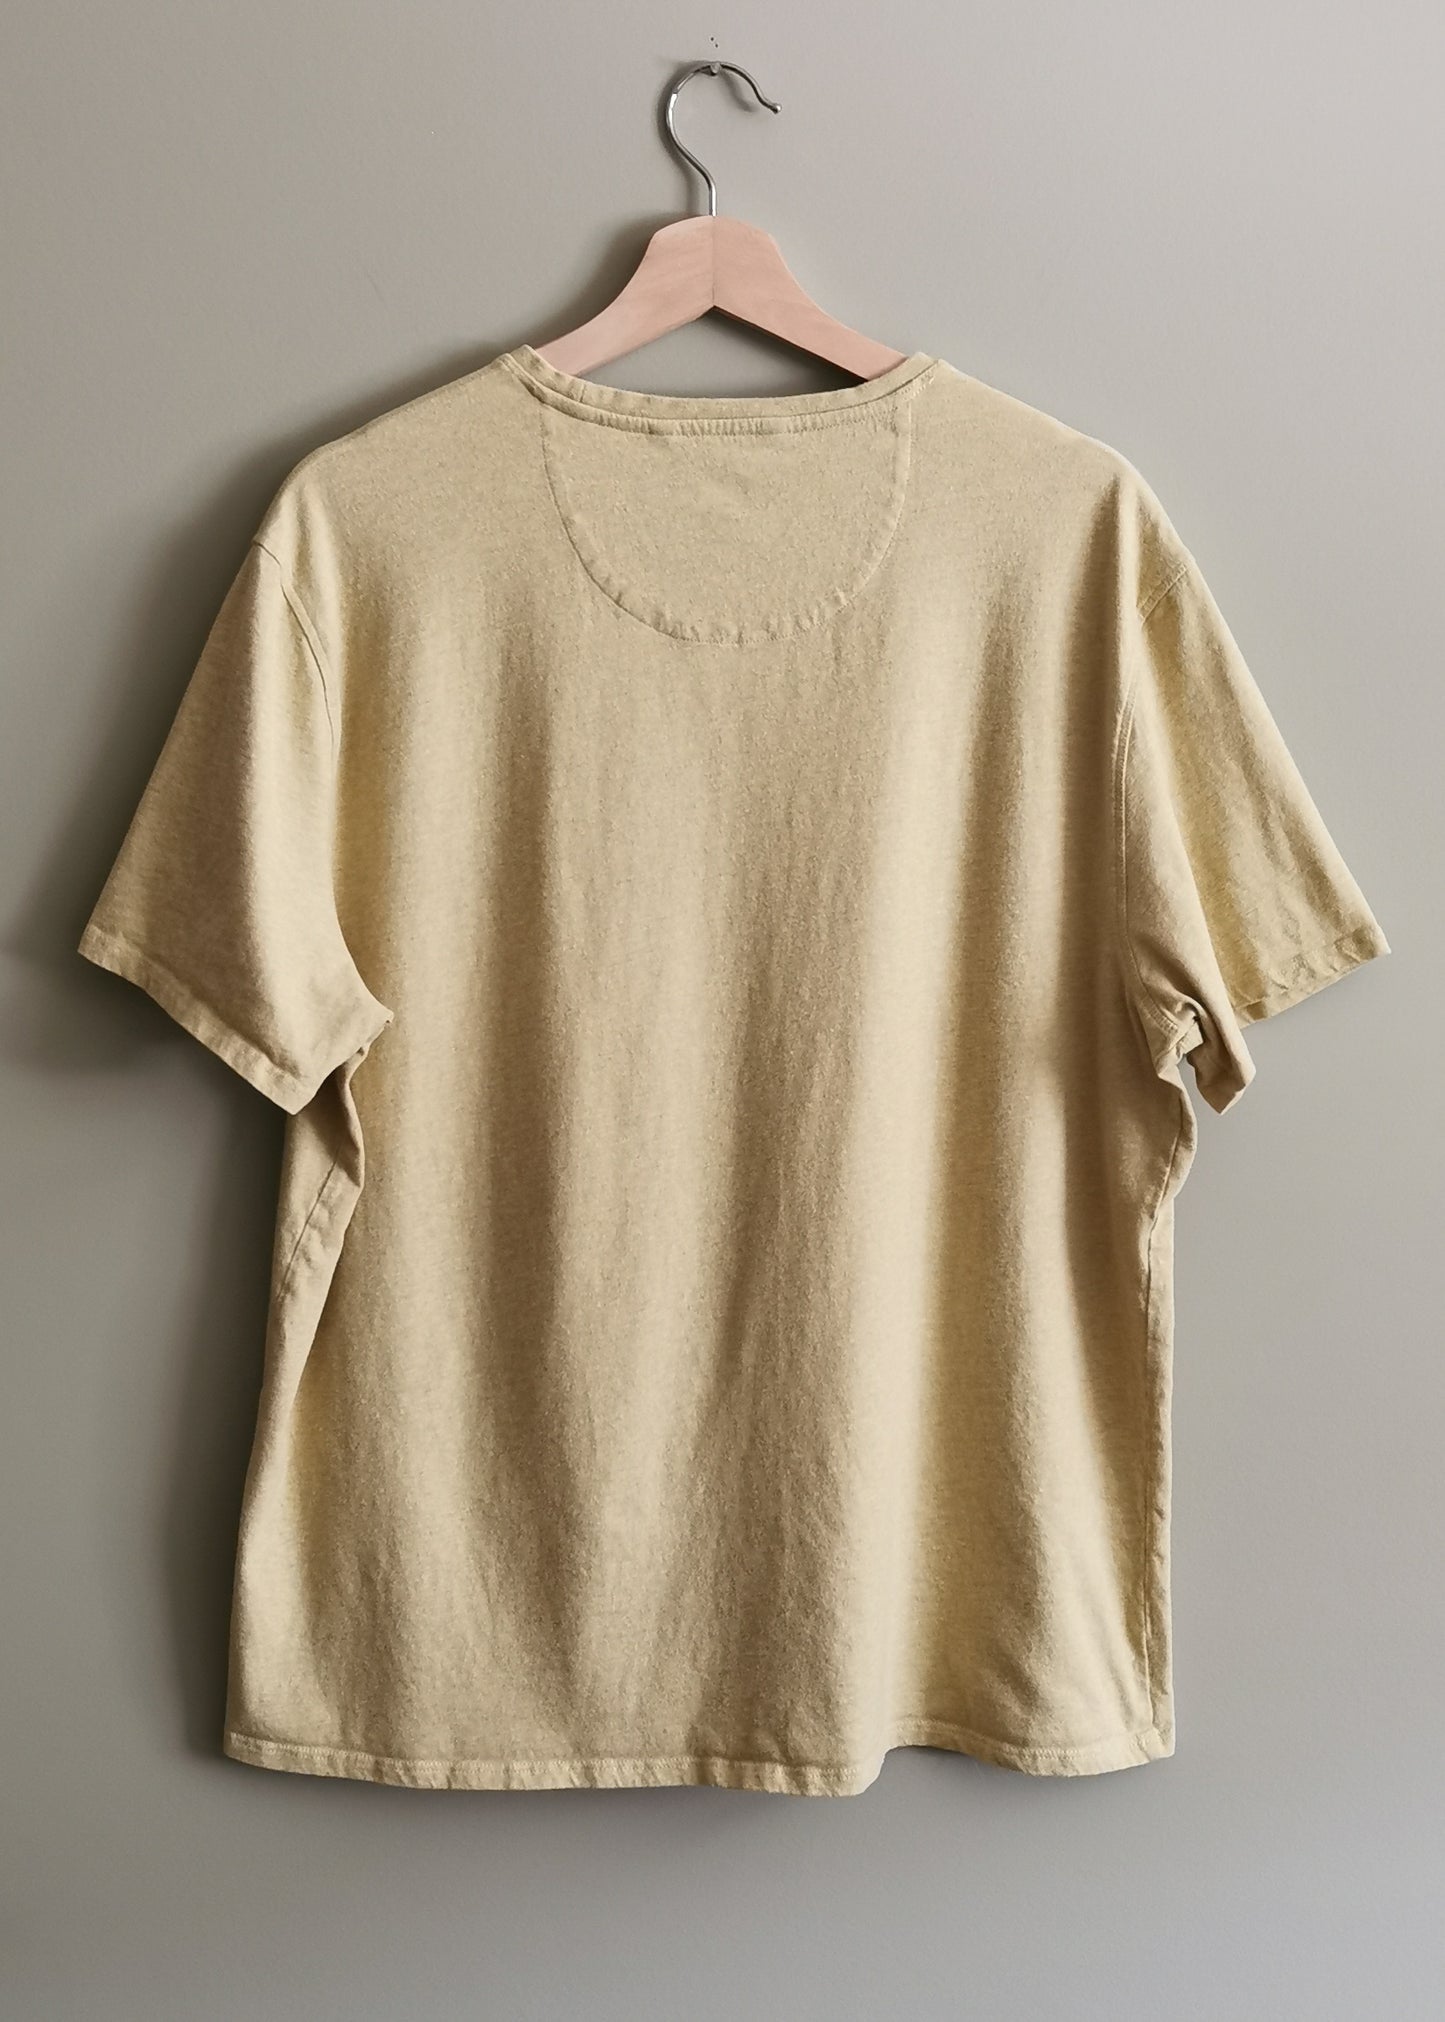 Black Brown 1826 Organic Cotton Shirt (XXL)*